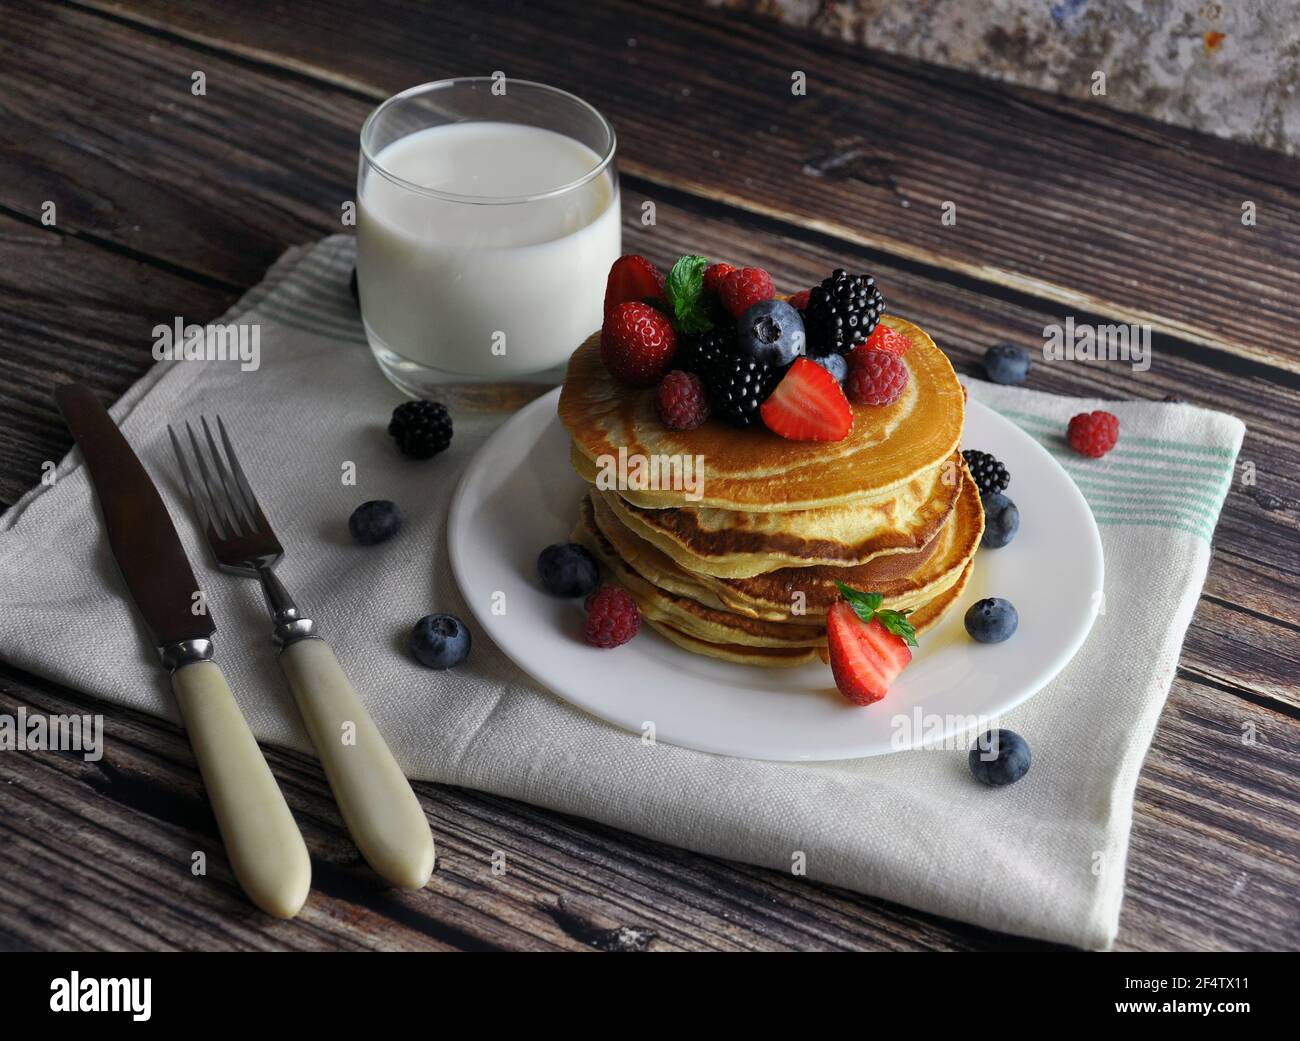 Sana colazione di frittelle con frutti di bosco, latte su un asciugamano da cucina. Foto Stock